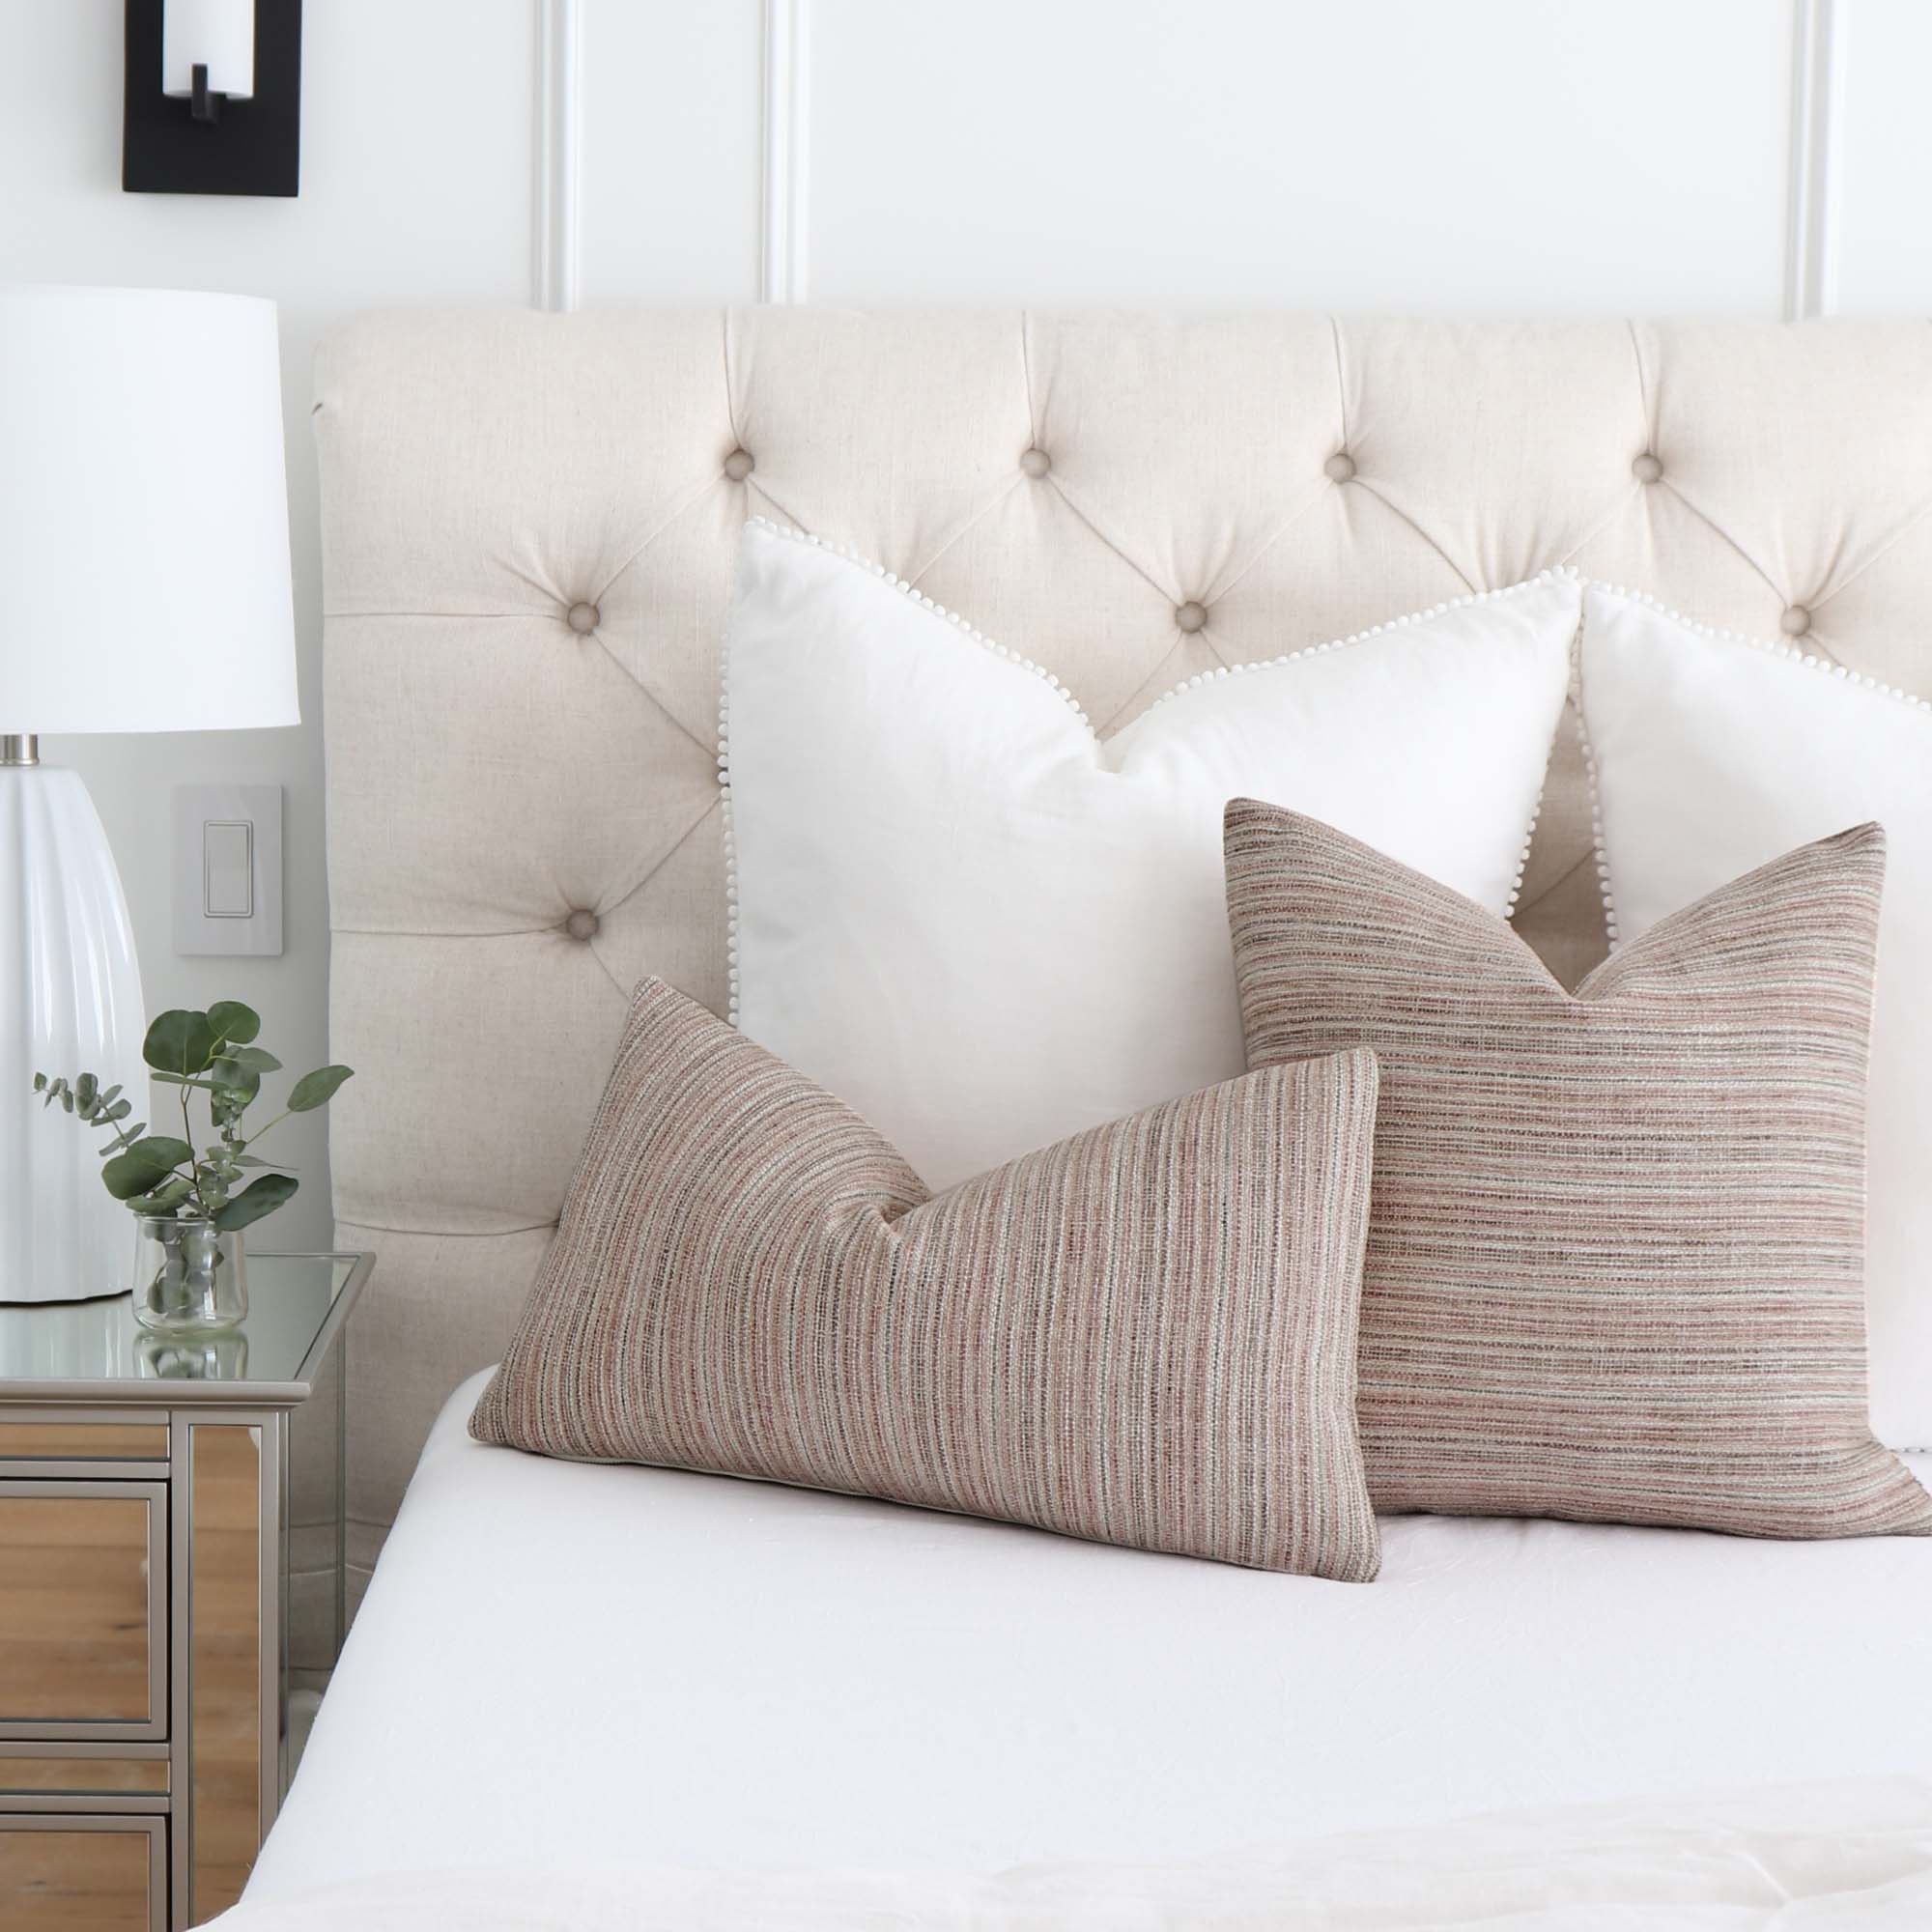 Schumacher Formentera Performance Blush Textured Designer Throw Pillow on Bed